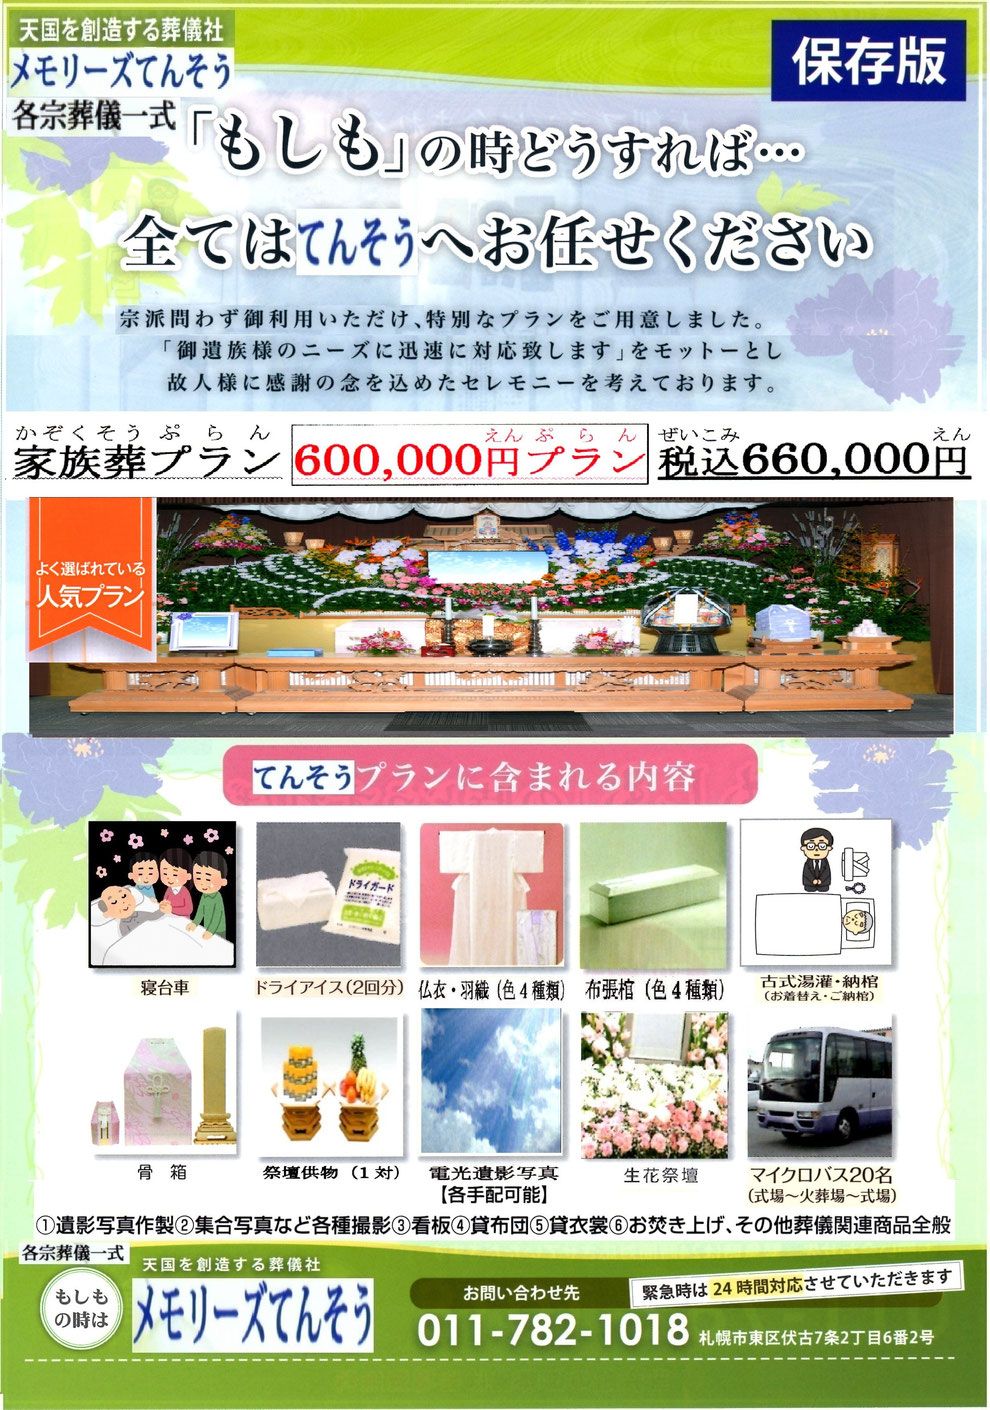 札幌家族葬メモリーズてんそう 葬儀・家族葬660,000円プラン